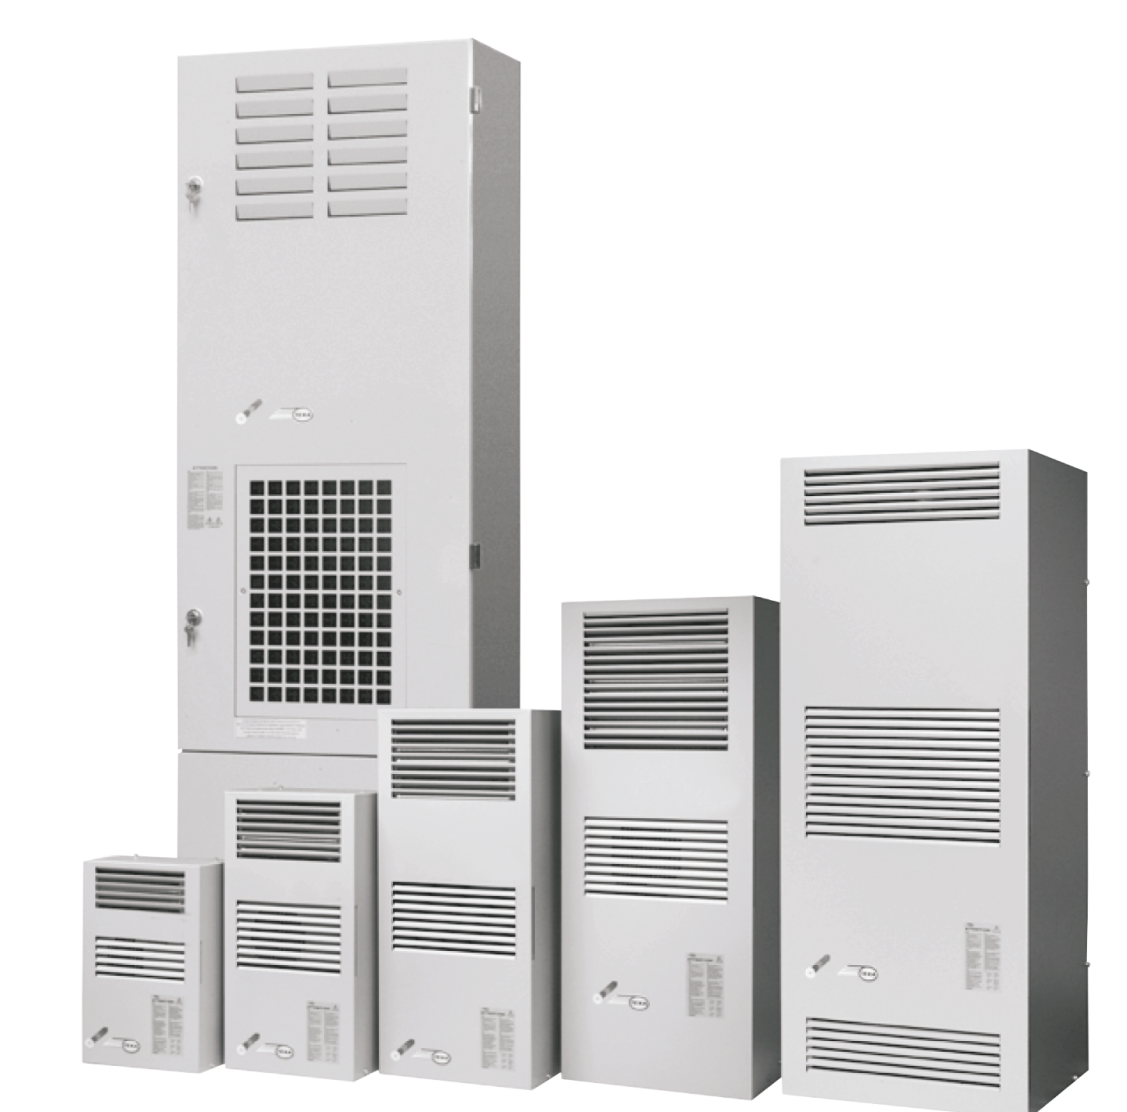 Air conditioner EGO40 (230V, 50-60Hz, 3850W)